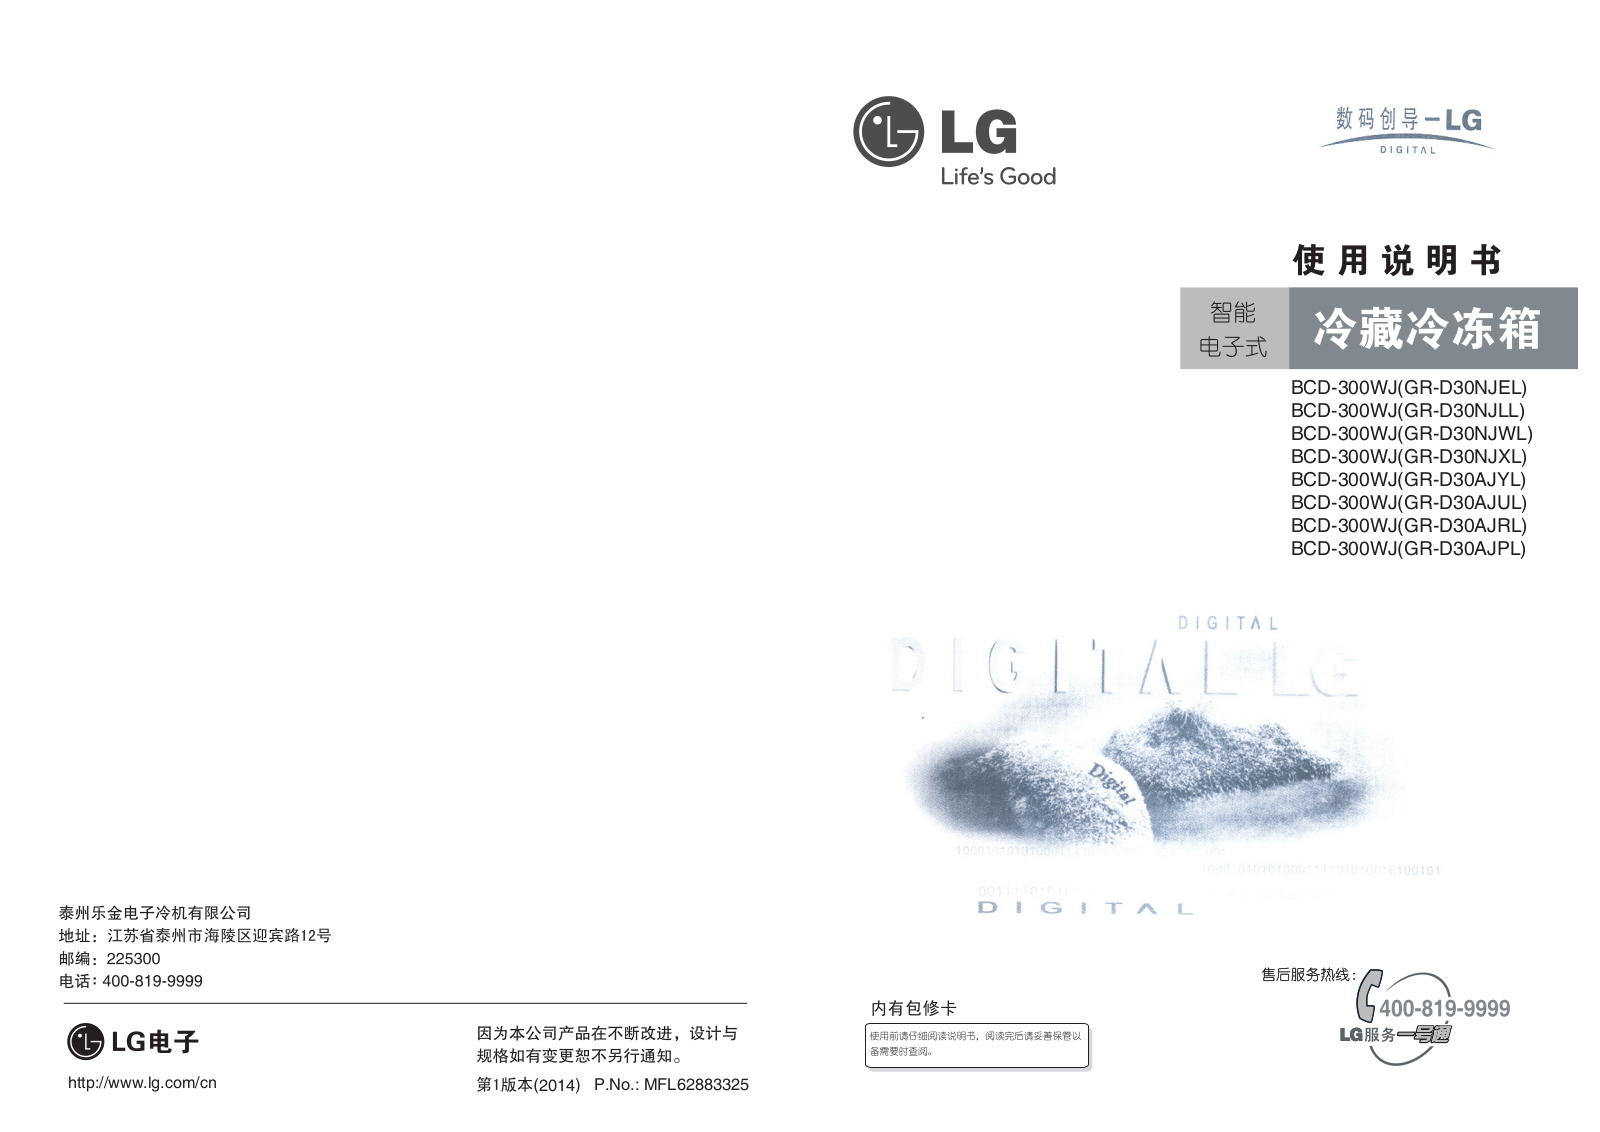 LG GR-D30AJPL Product Manual